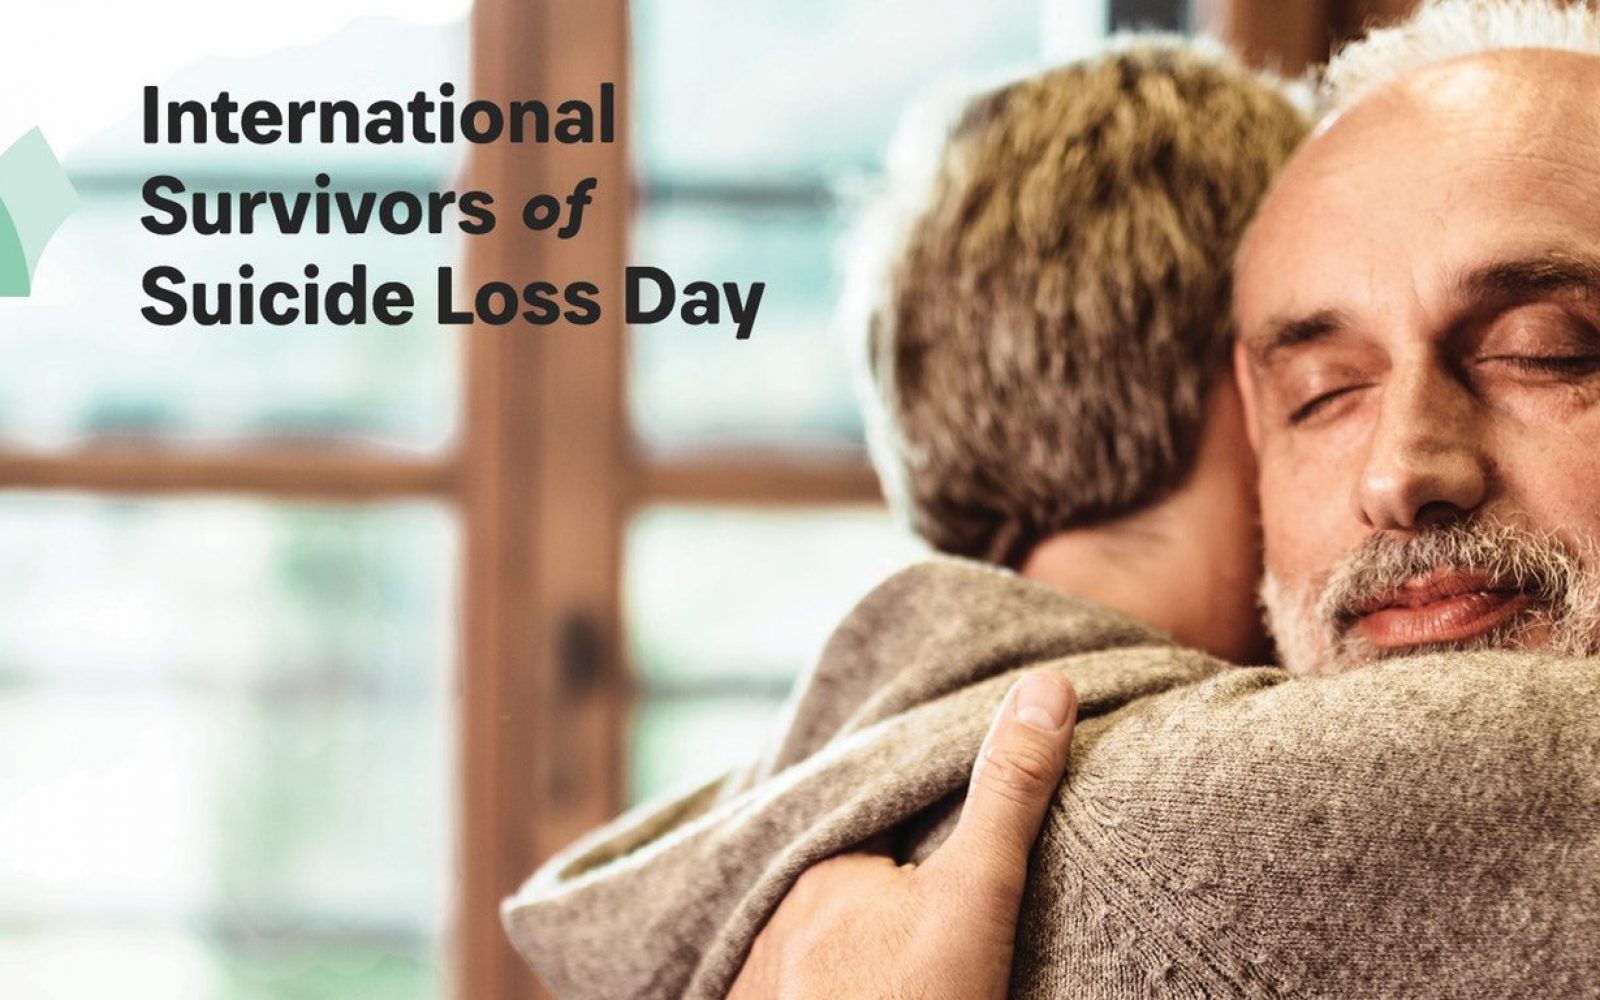 Mednarodni dan solidarnosti z družinami, ki so izgubile bližnjega zaradi samomora 2019